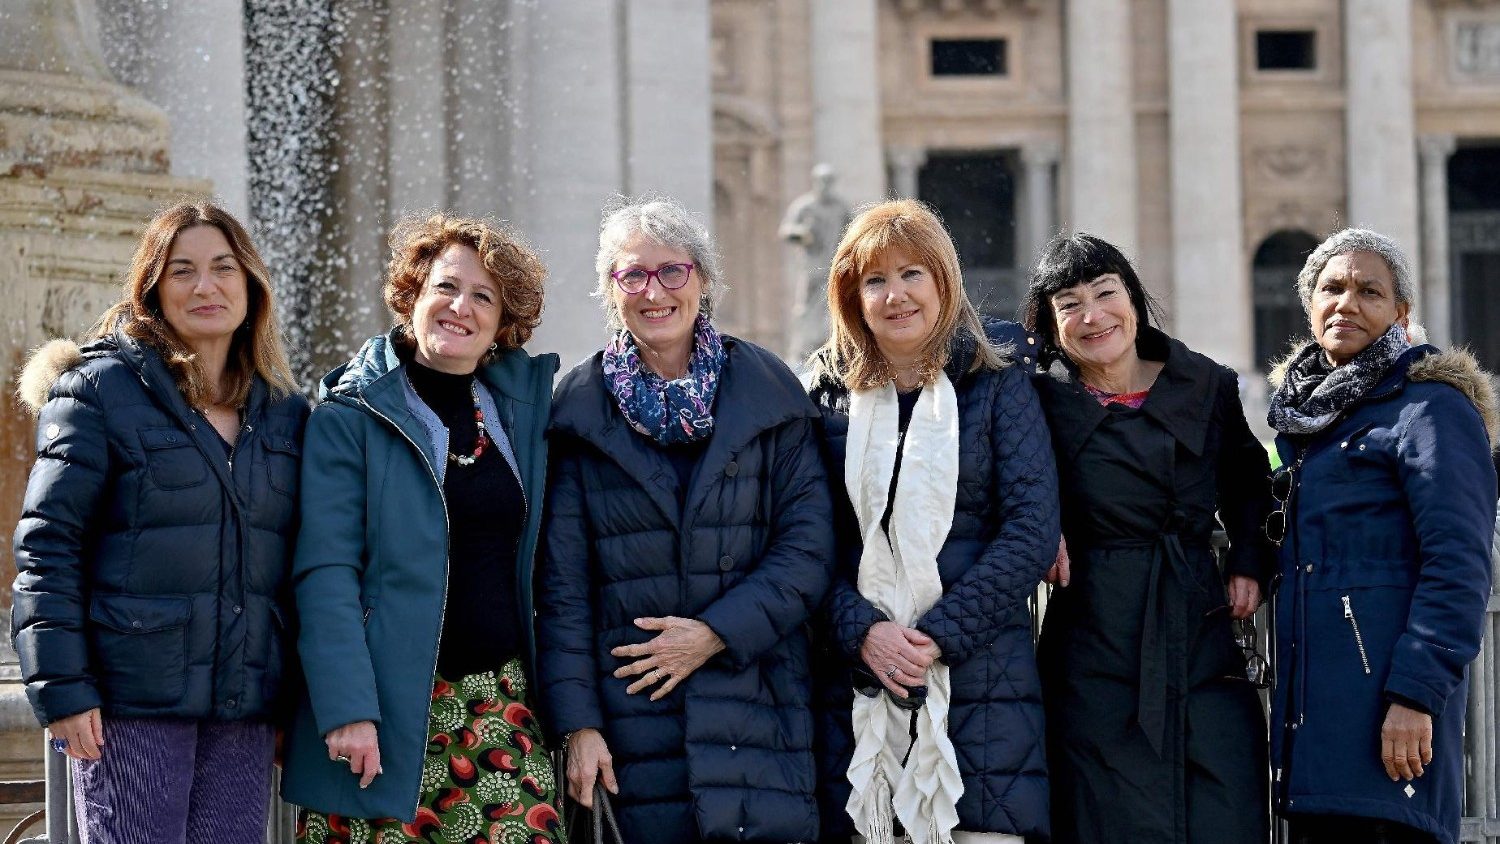 Mujeres en el Vaticano